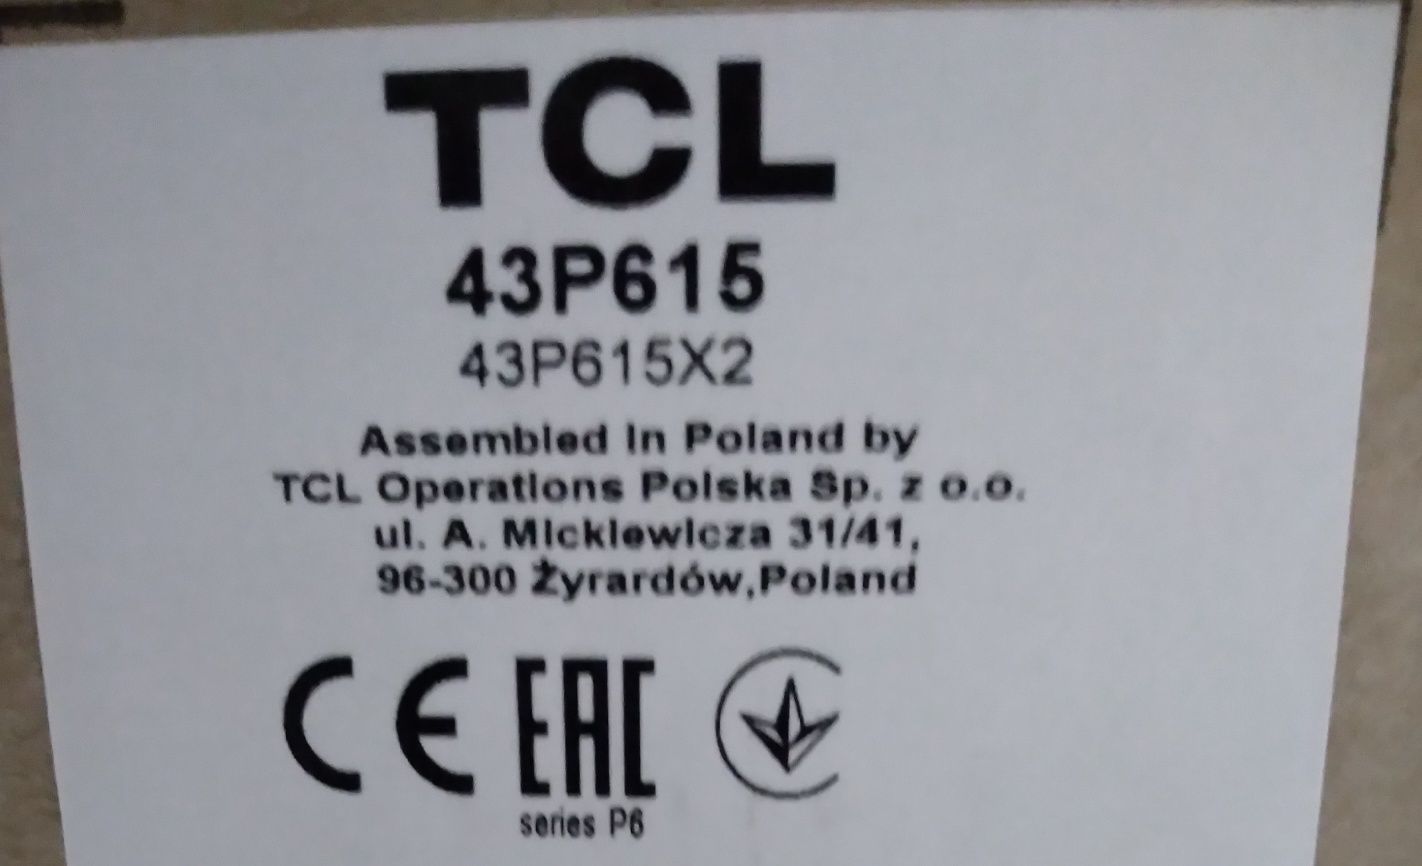 Czesci TCL 43P615  p615